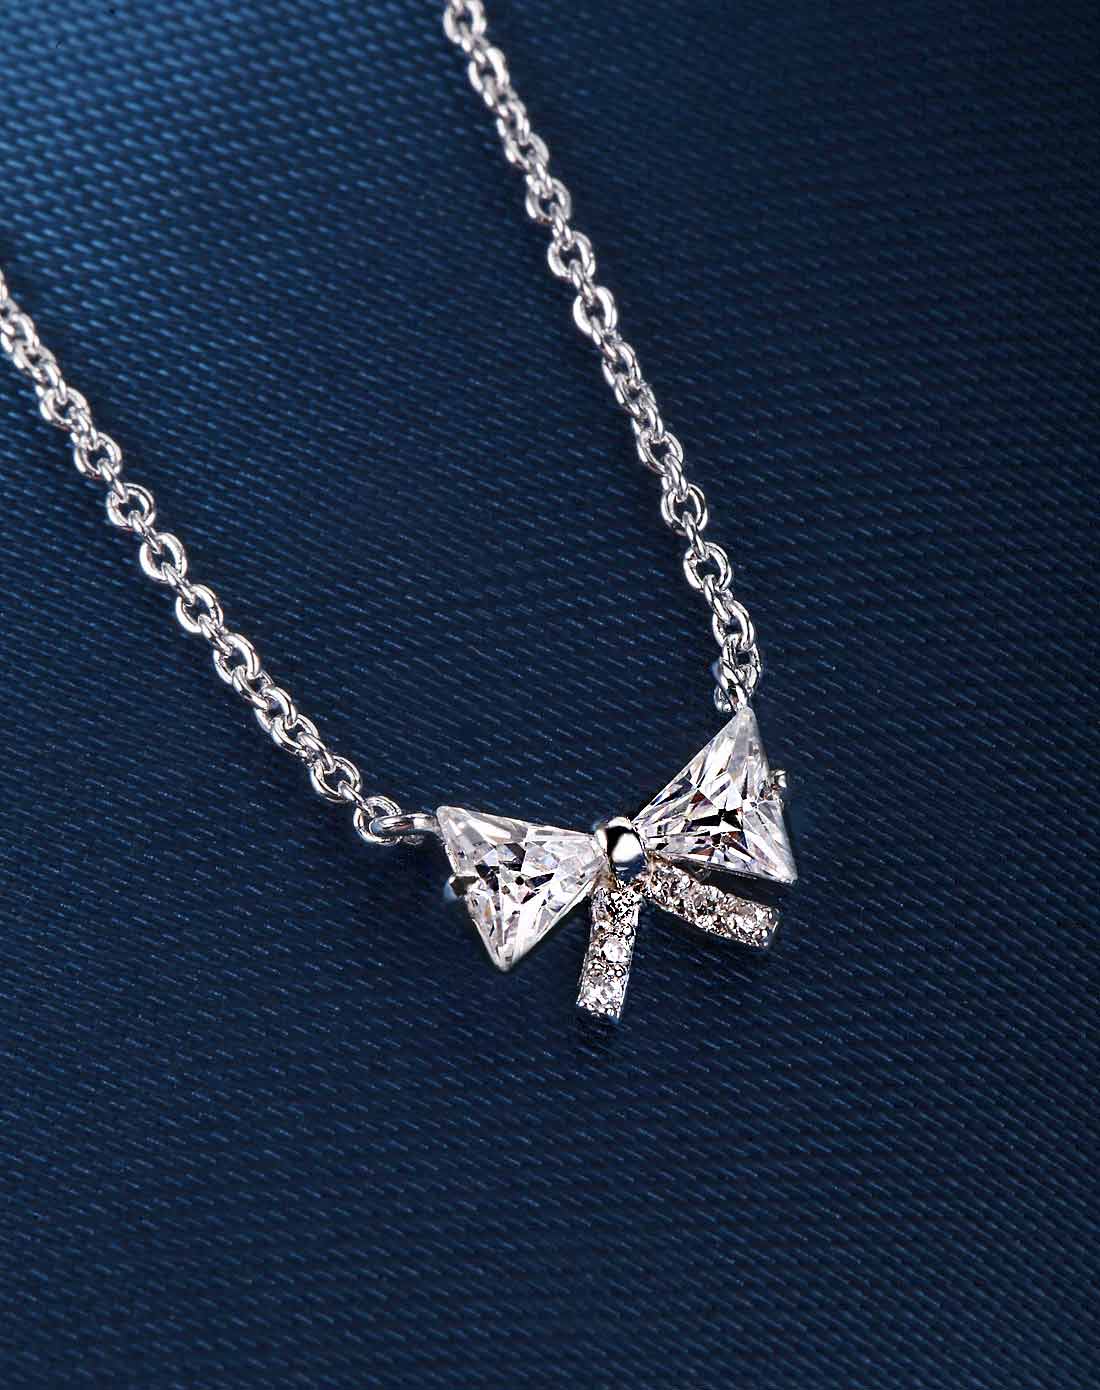 【经典时尚】s925银镶施华洛世奇宝石蝴蝶结钻石项链